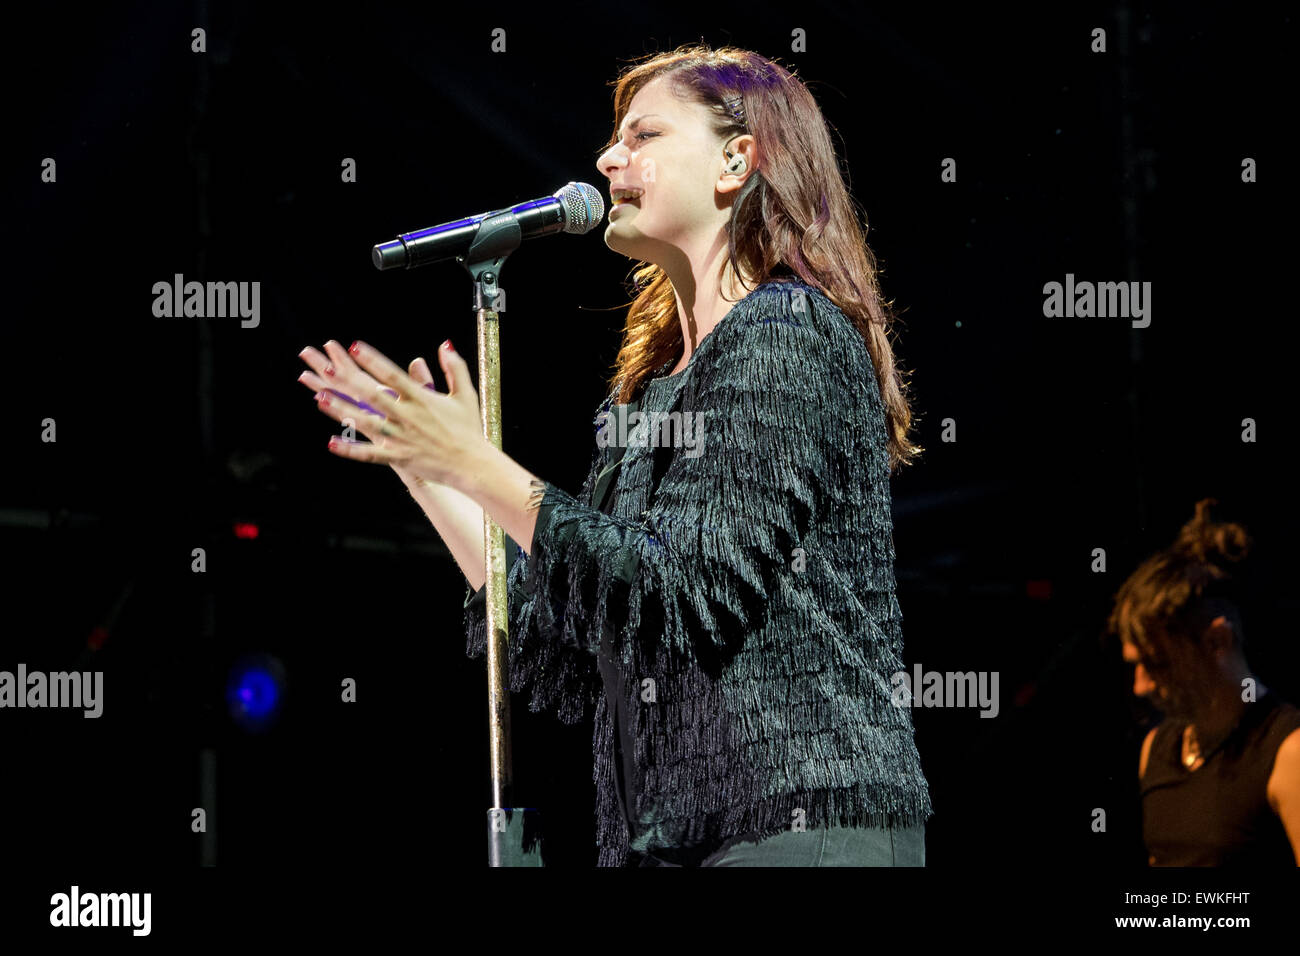 Grugliasco, Italien. 27. Juli 2015.  Italienische Sängerin Annalisa, auch bekannt als Nali, während des Konzerts Credit: Edoardo Nicolino/Alamy Live News Stockfoto